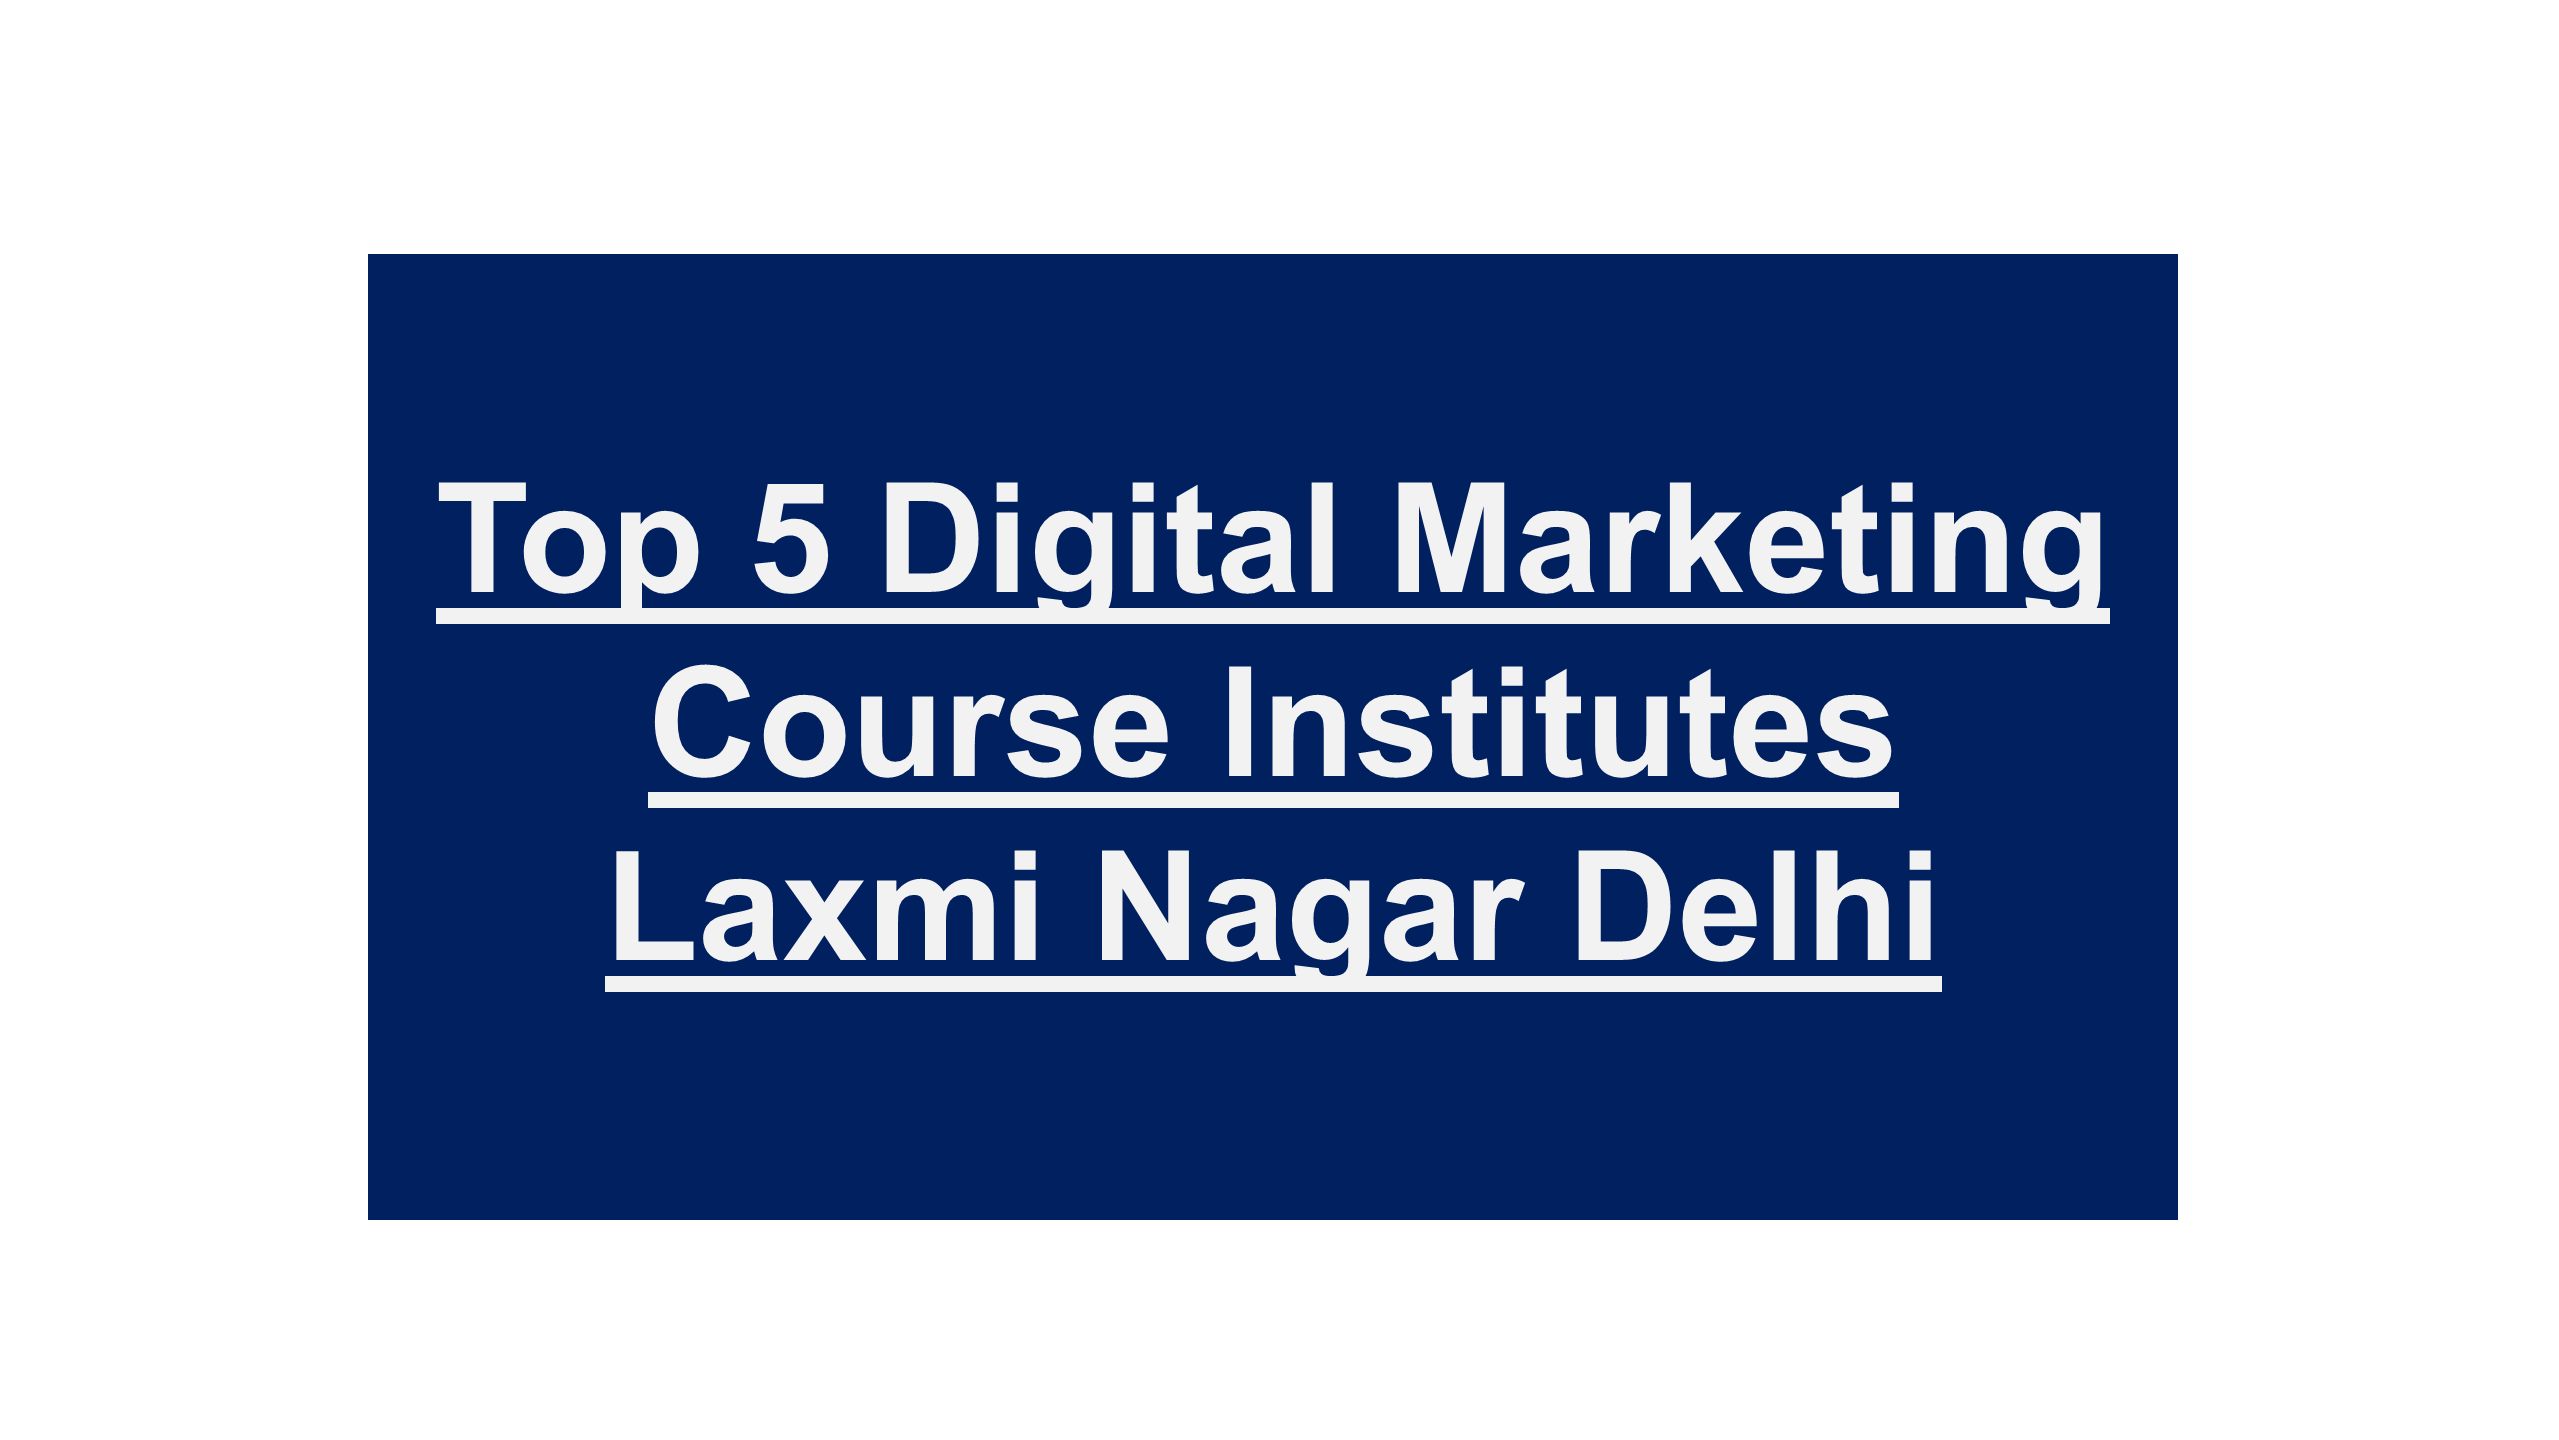 Top 5 Digital Marketing Course Institutes Laxmi Nagar Delhi